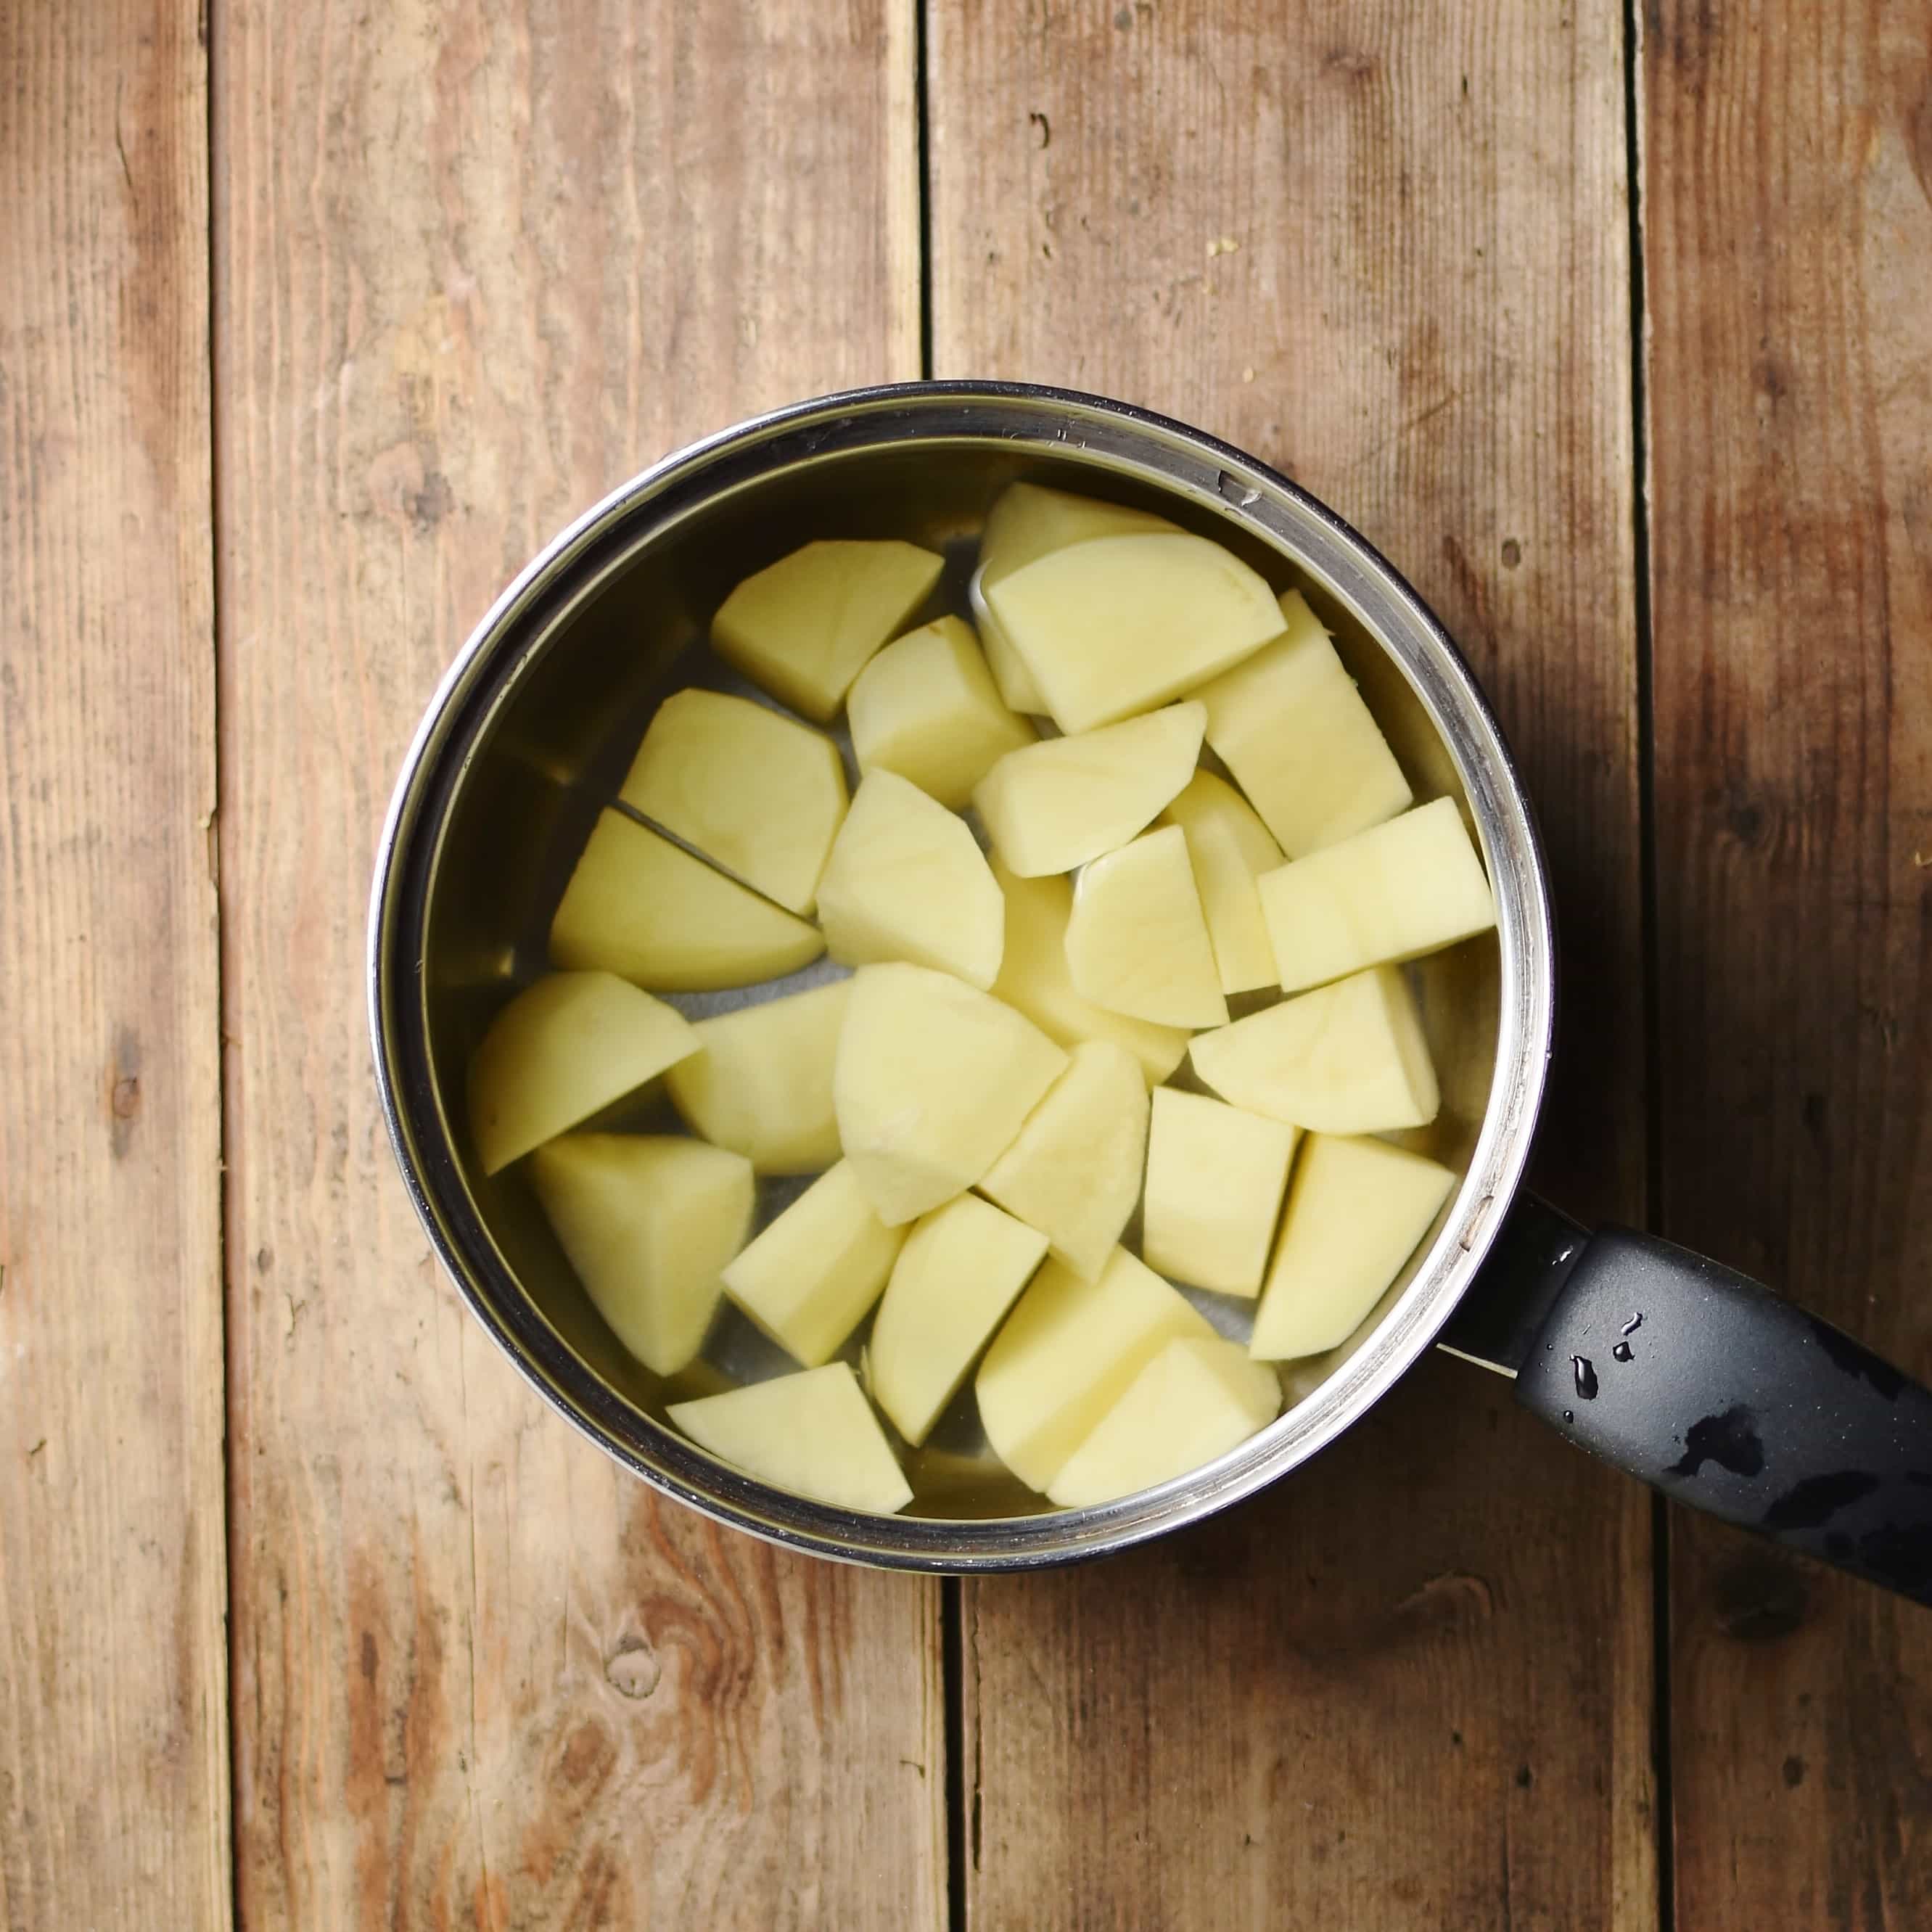 Cubed potatoes in water inside saucepan.